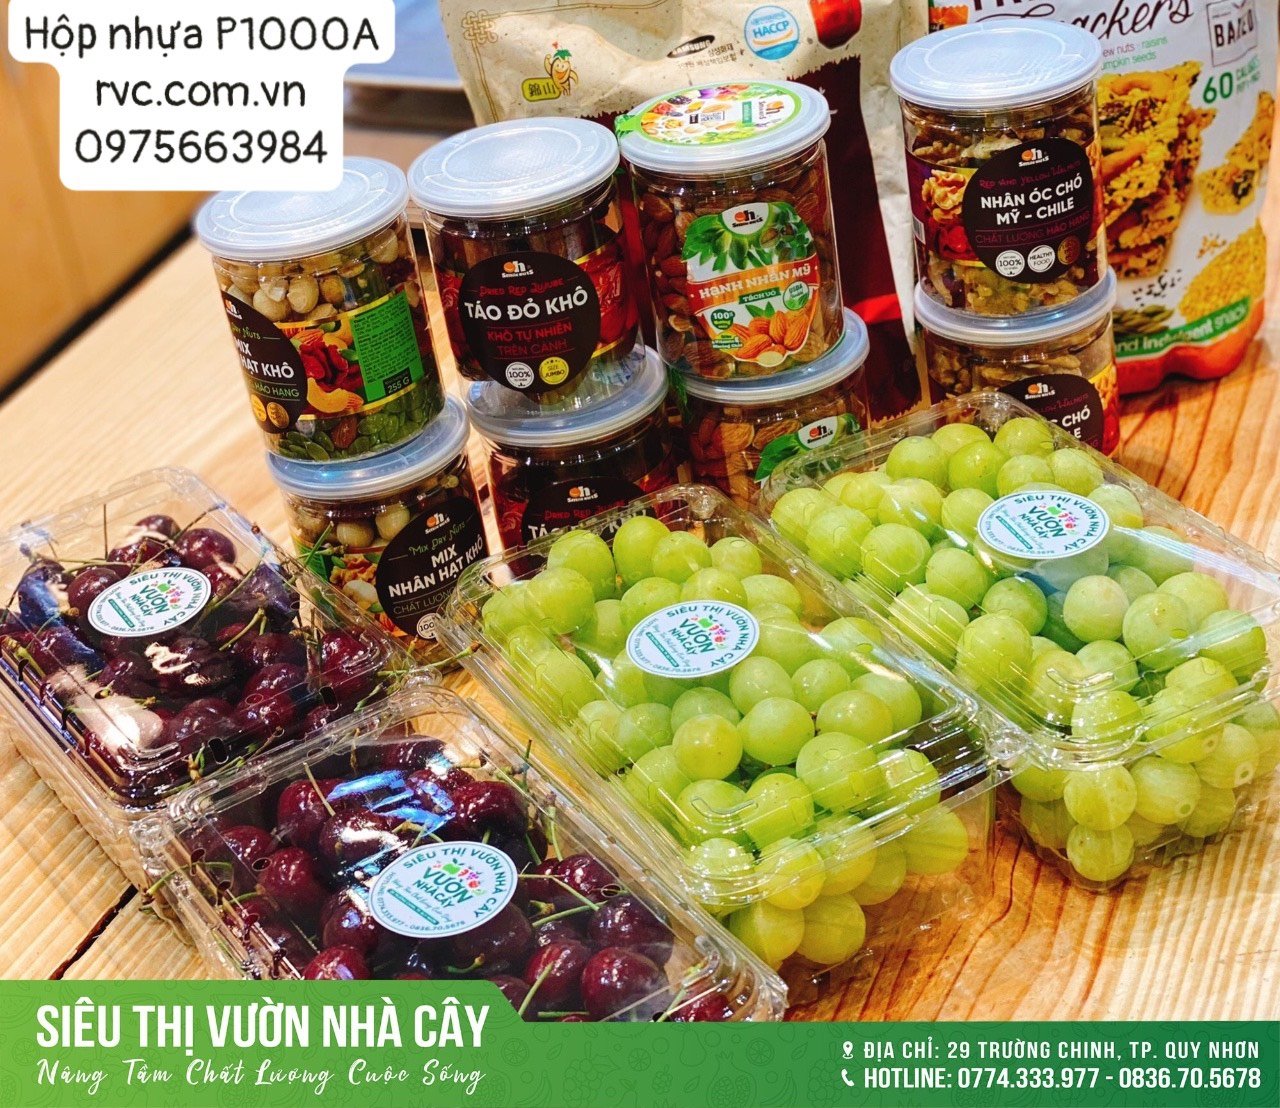 Chuyên cung cấp giá sỉ hộp nhựa đựng hoa quả cho cửa hàng trái cây  6190930_Hop_nhua_dung_trai_cay_18